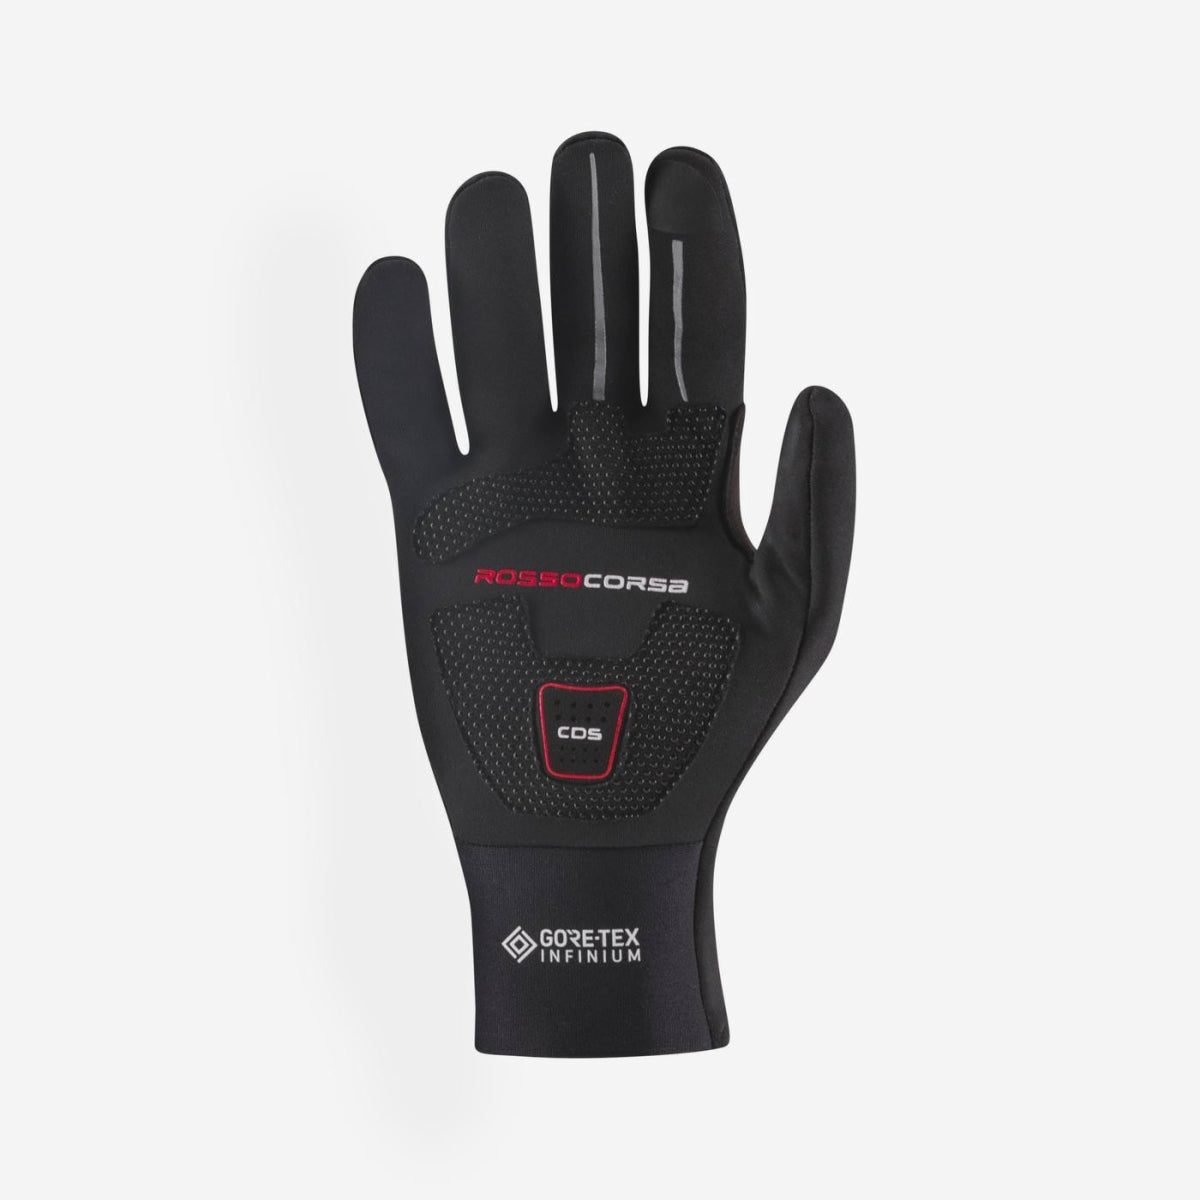 Castelli Perfetto Ros Glove